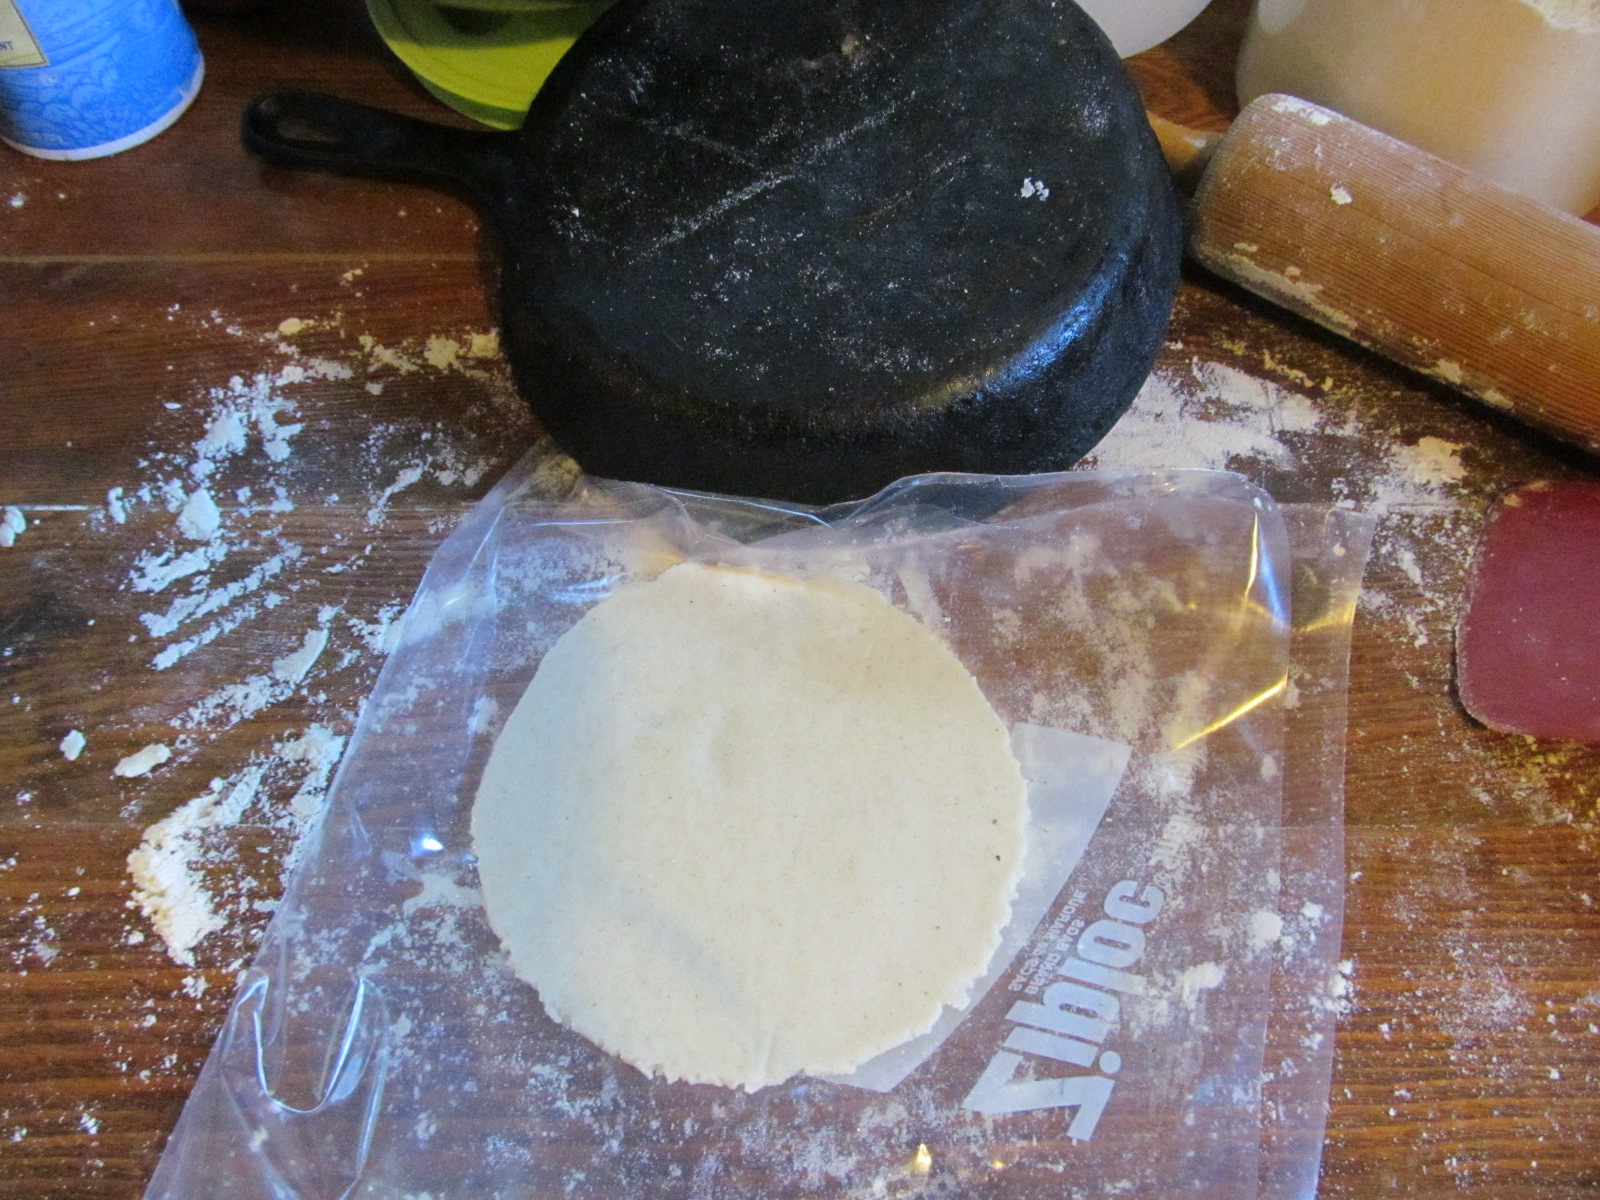 Ad hoc skillet tortilla press